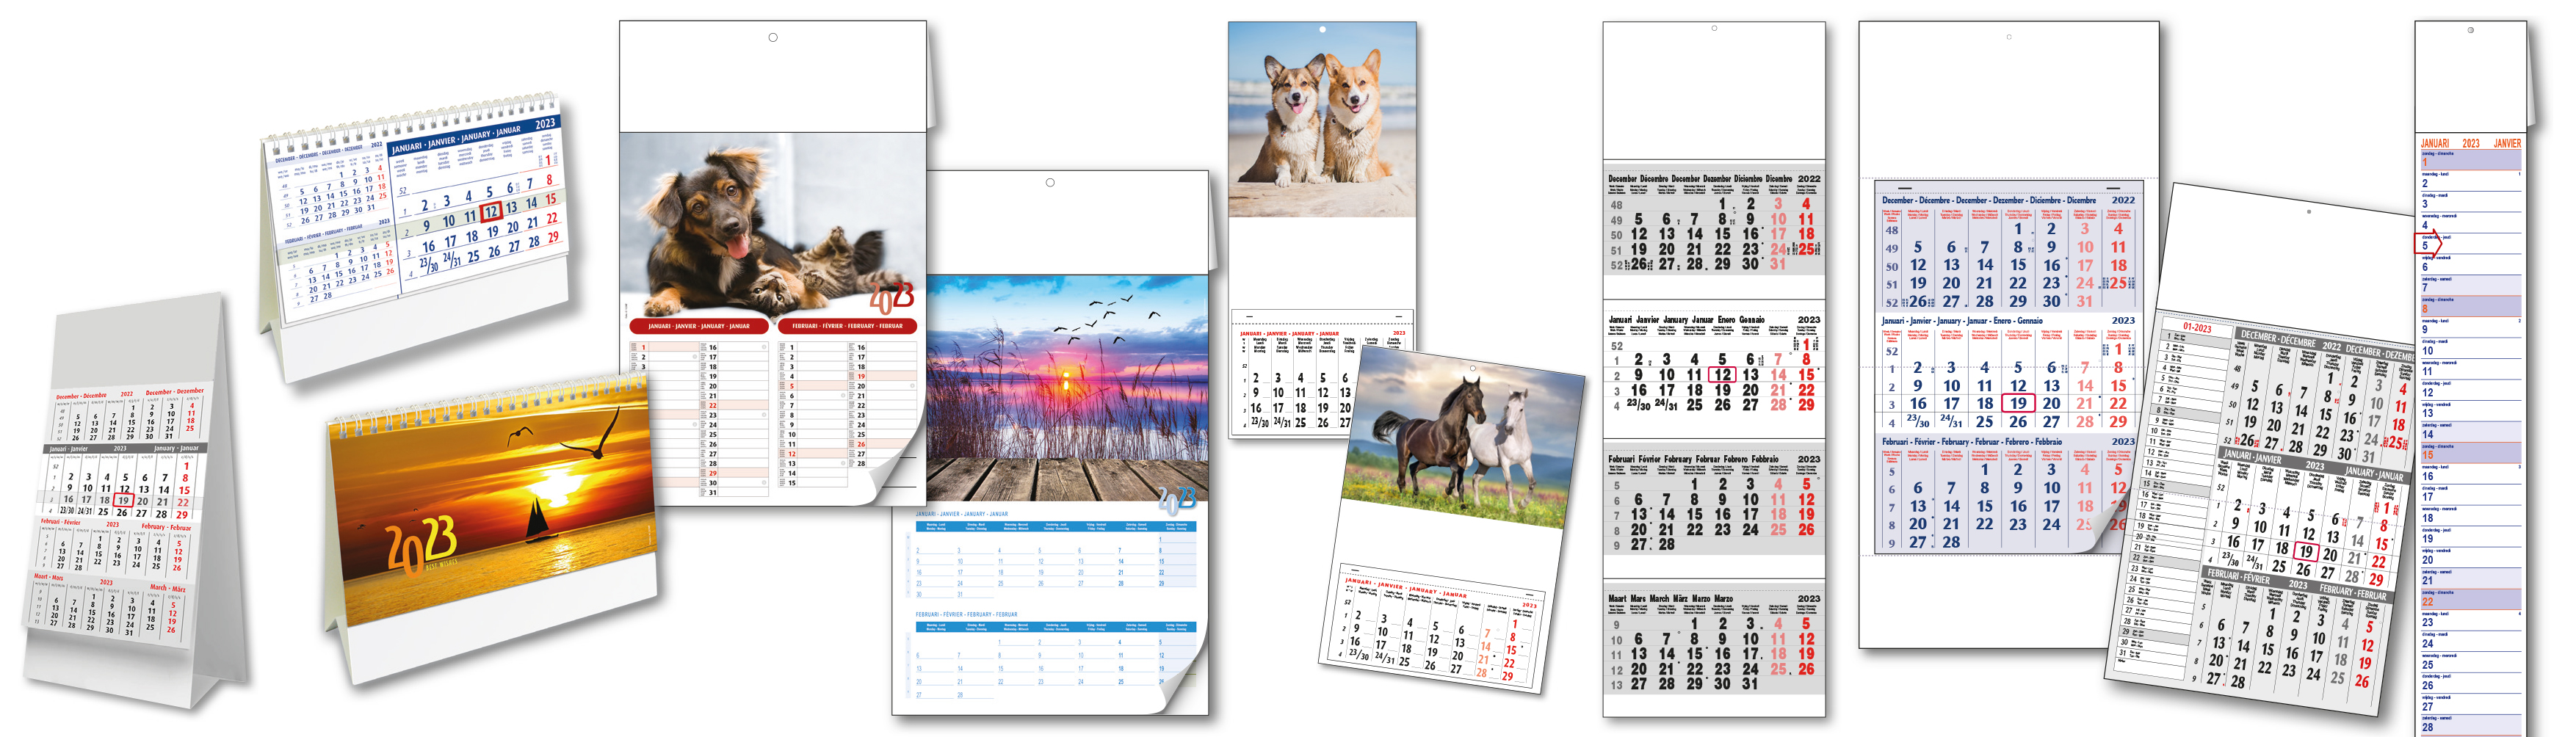 Ontdek ons assortiment kalenders - Découvrez notre assortiment des calendriers